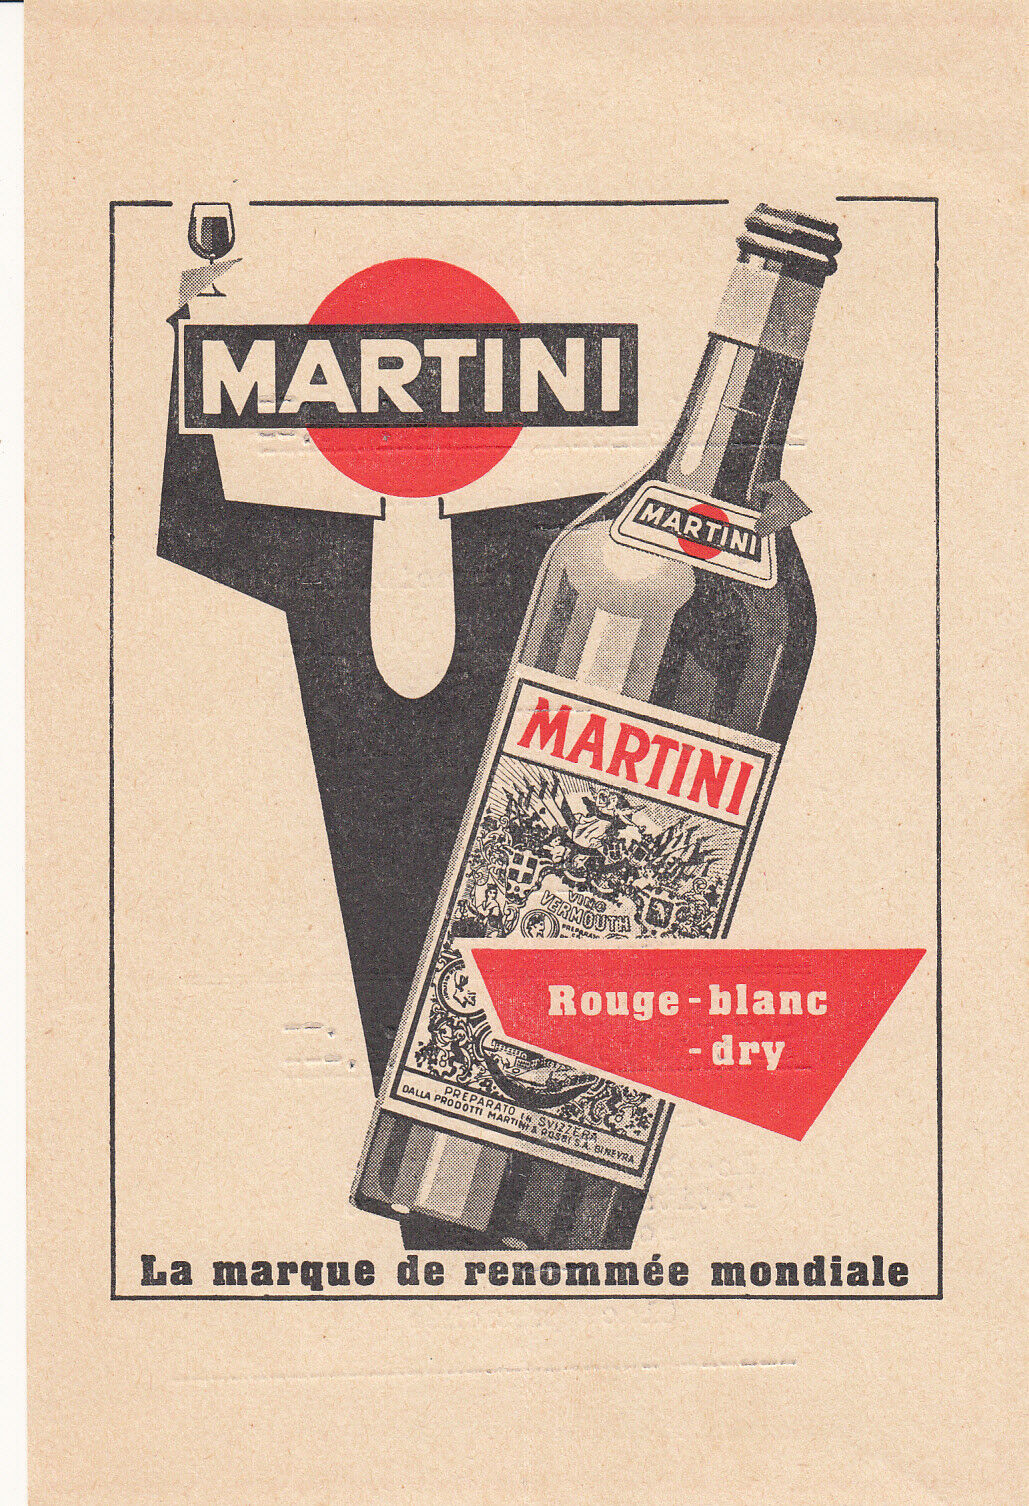 La Marque de Renommee Mondiale Martini Menu Vermouth 1940's